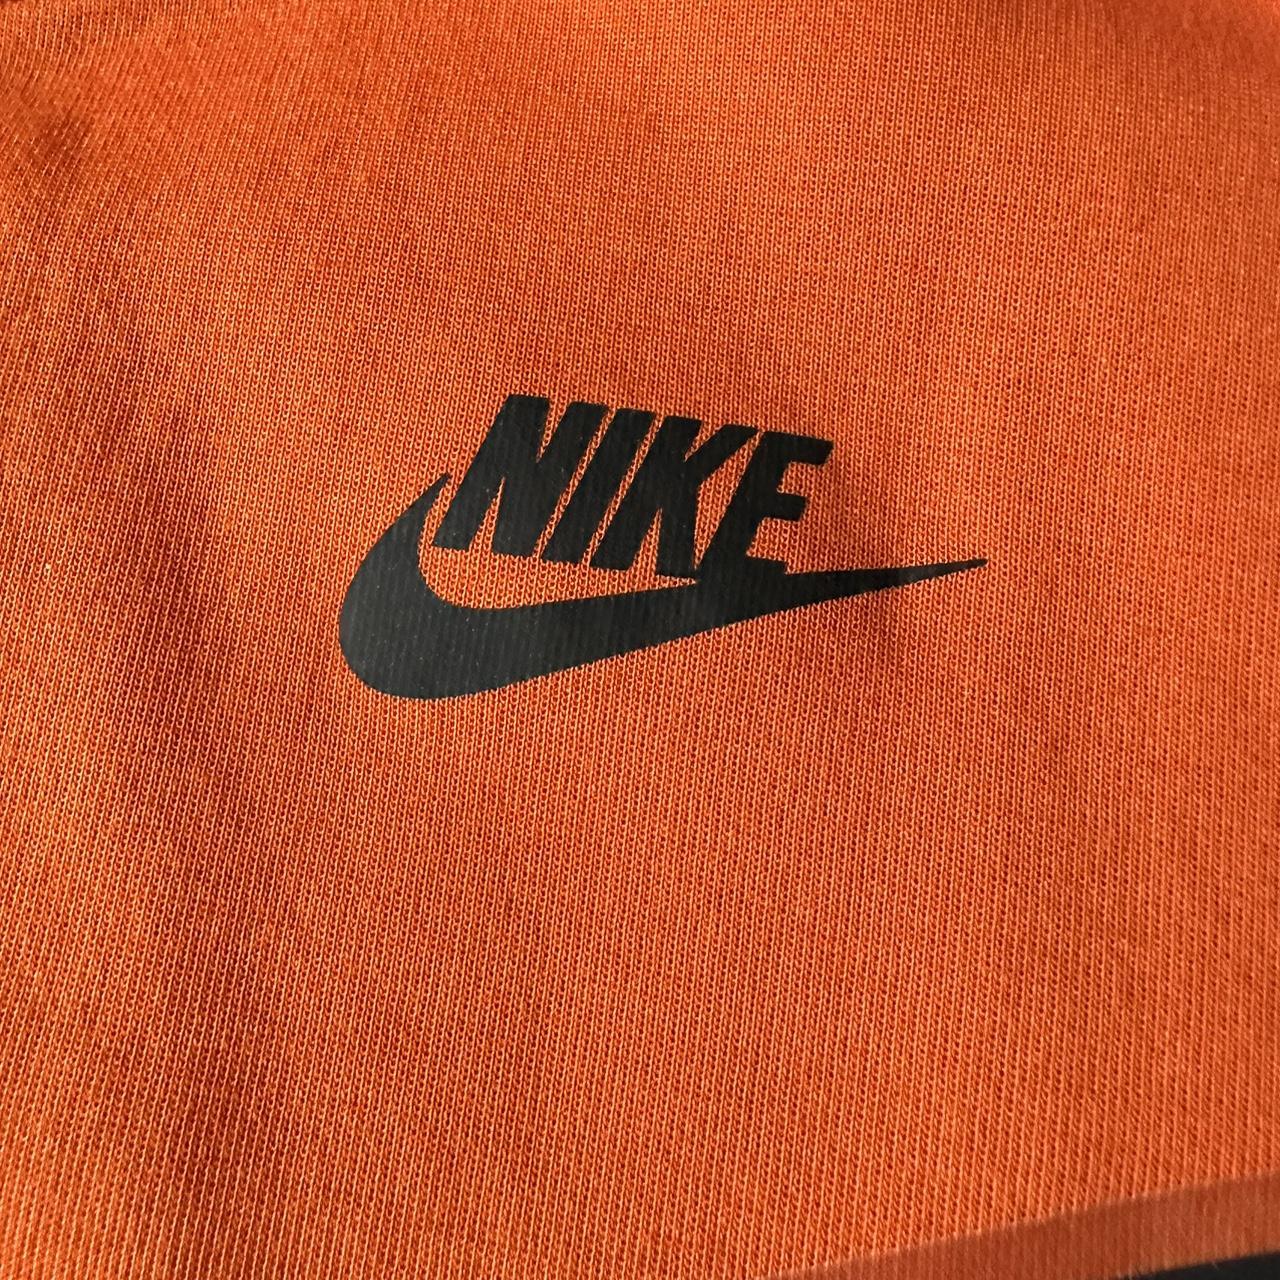 Nike Orange Tech Fleece Size Small Great... - Depop